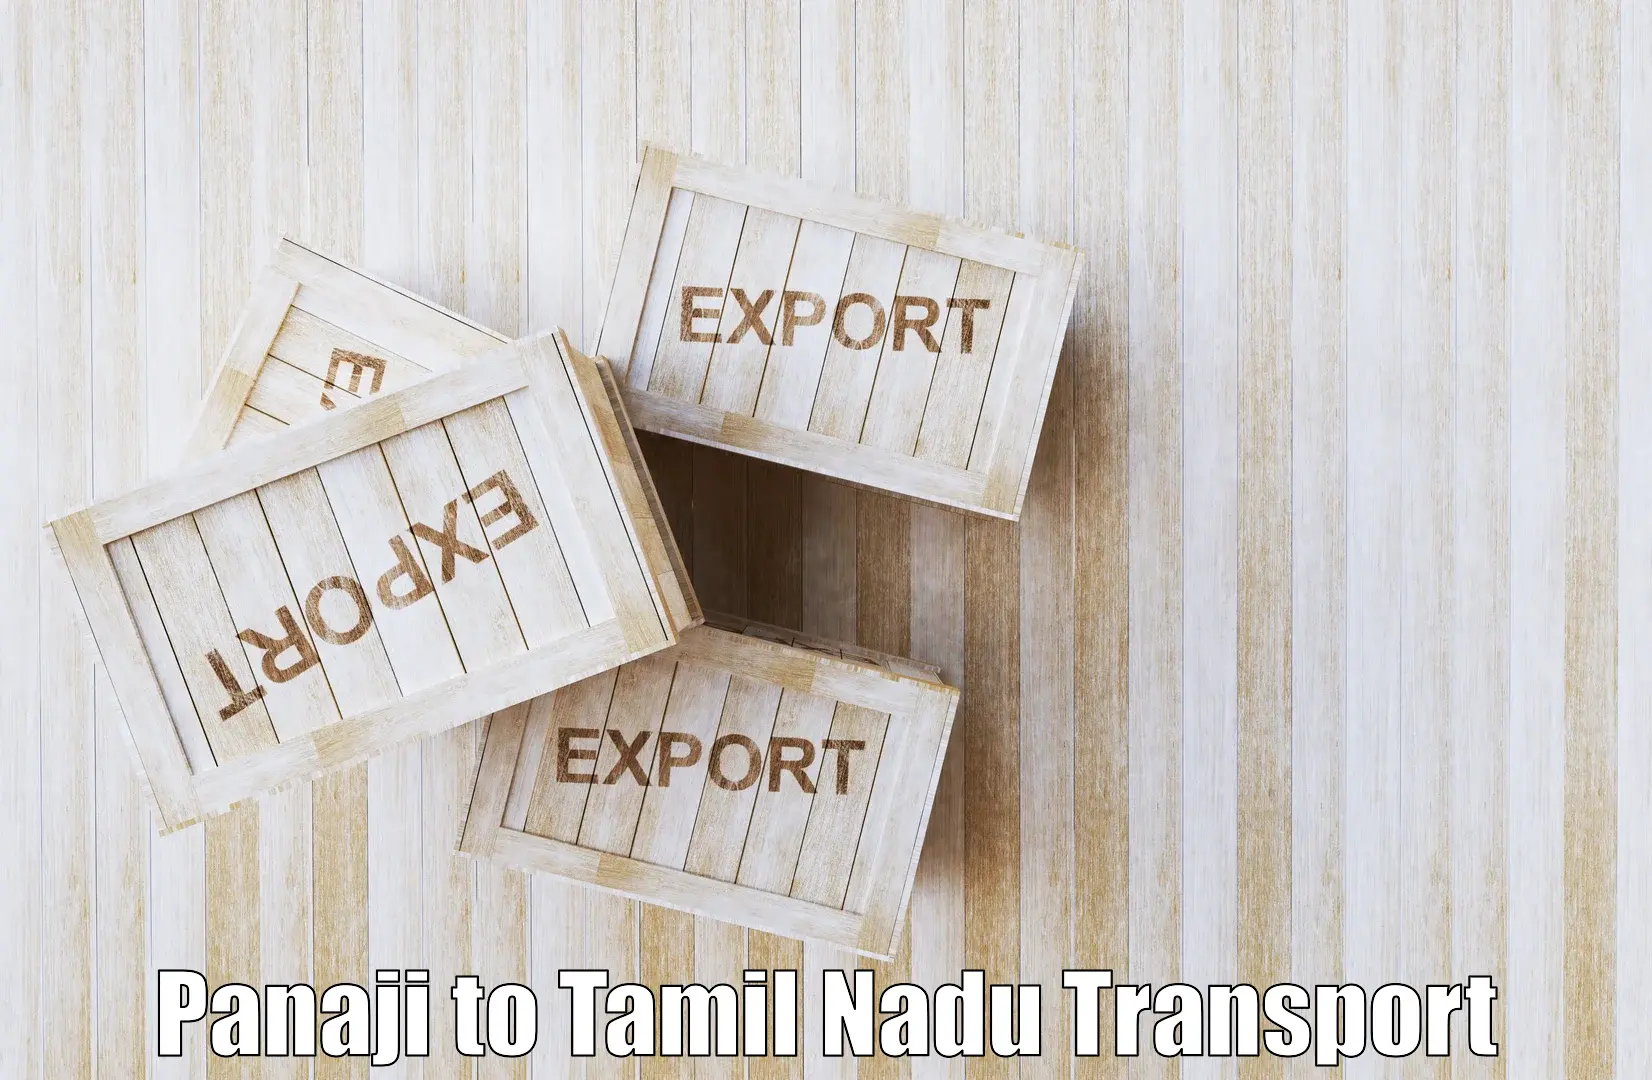 Nearby transport service Panaji to Panruti